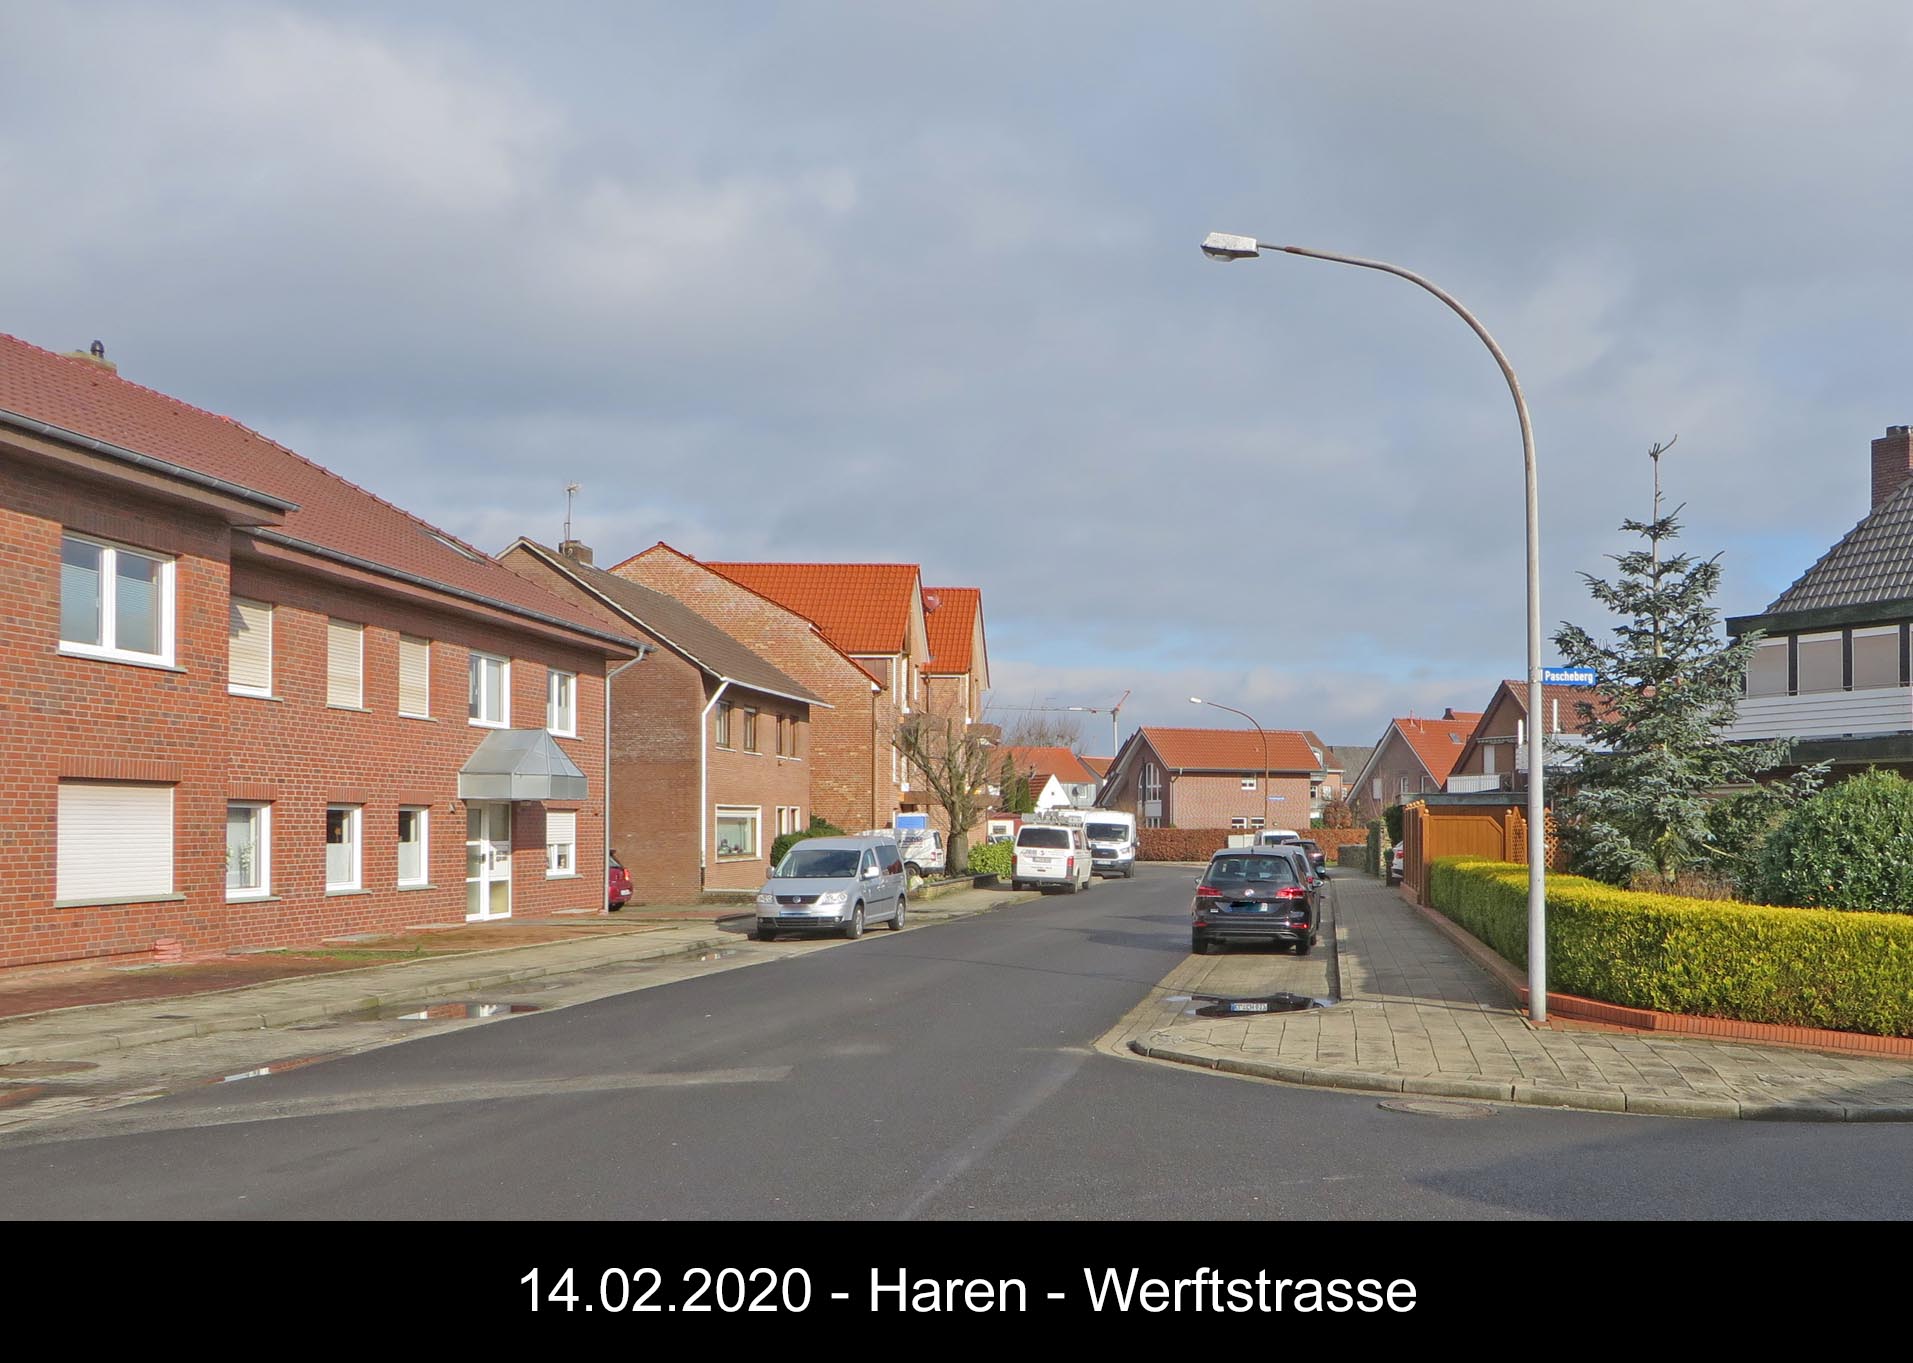 Werftstrasse 2020 6